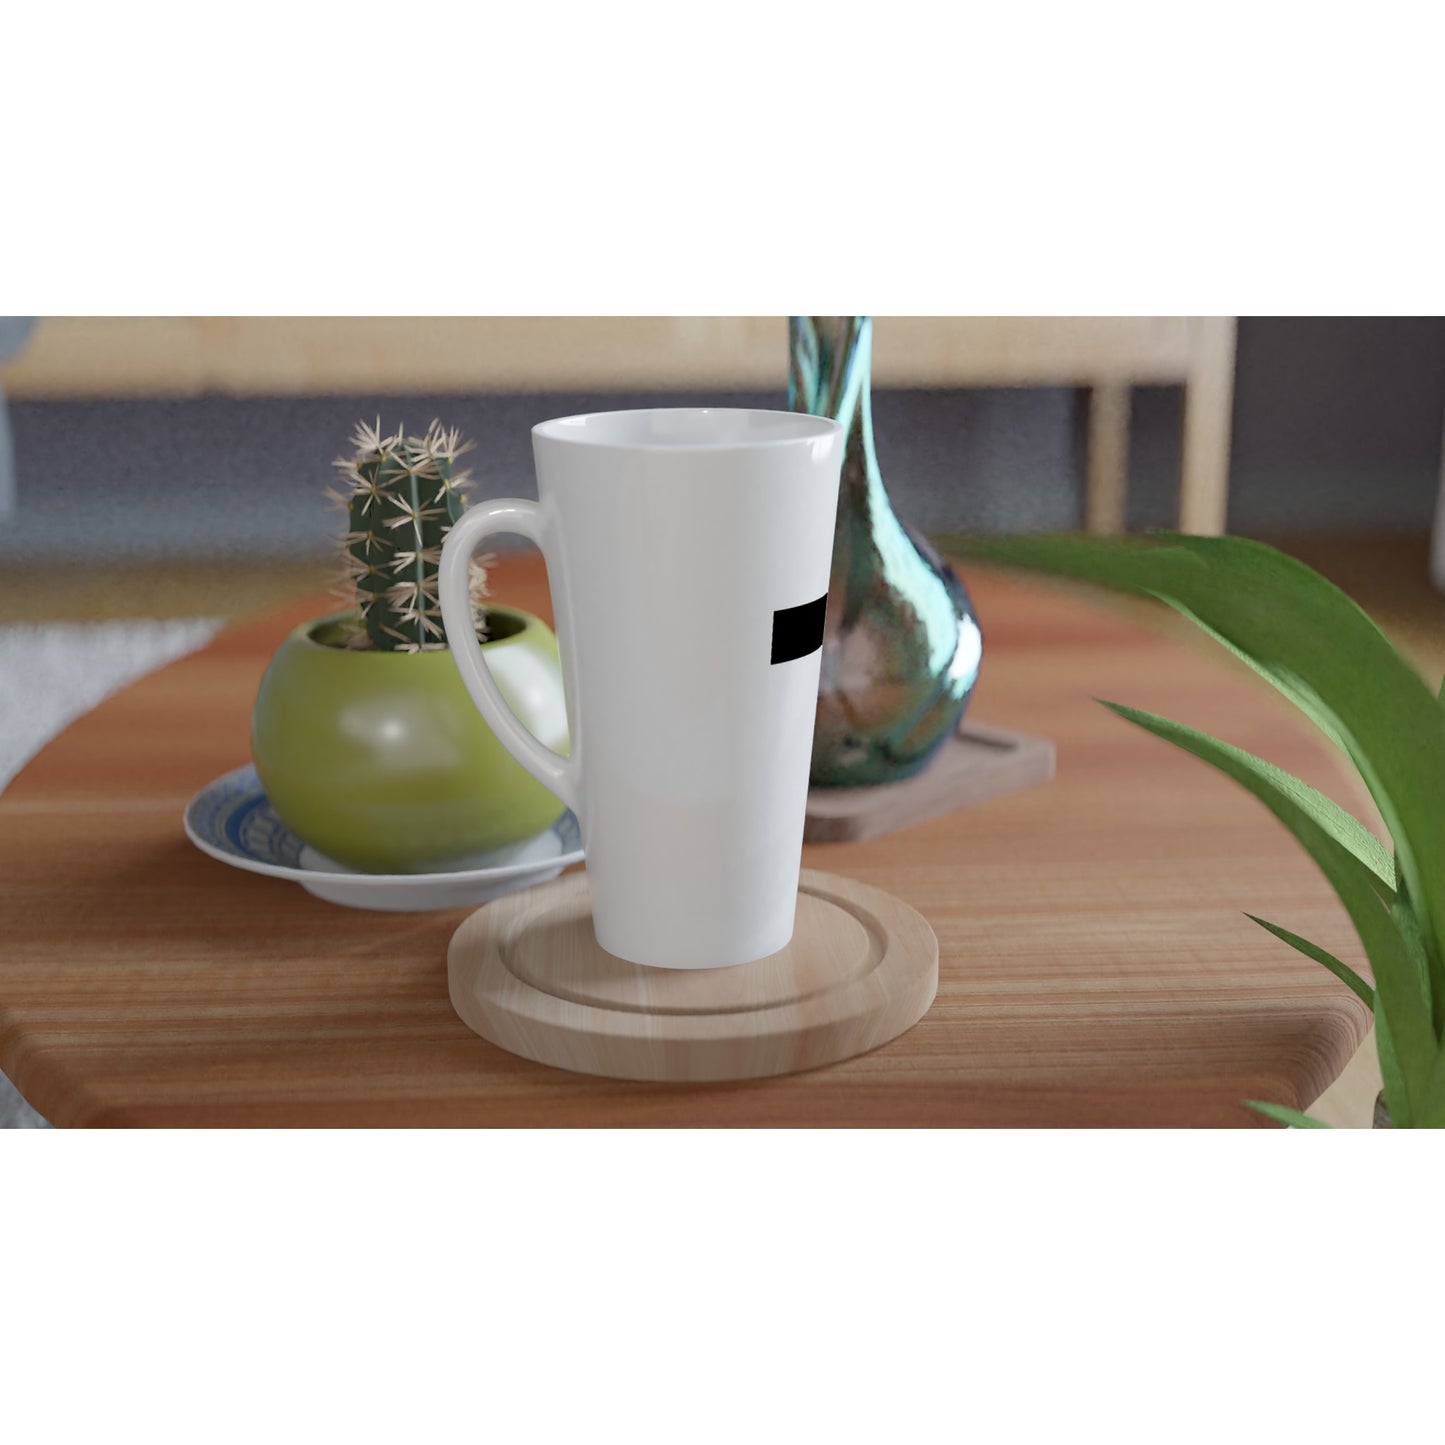 Christian Cross / Everyday is a Fresh Start - White Latte 17oz Ceramic Mug